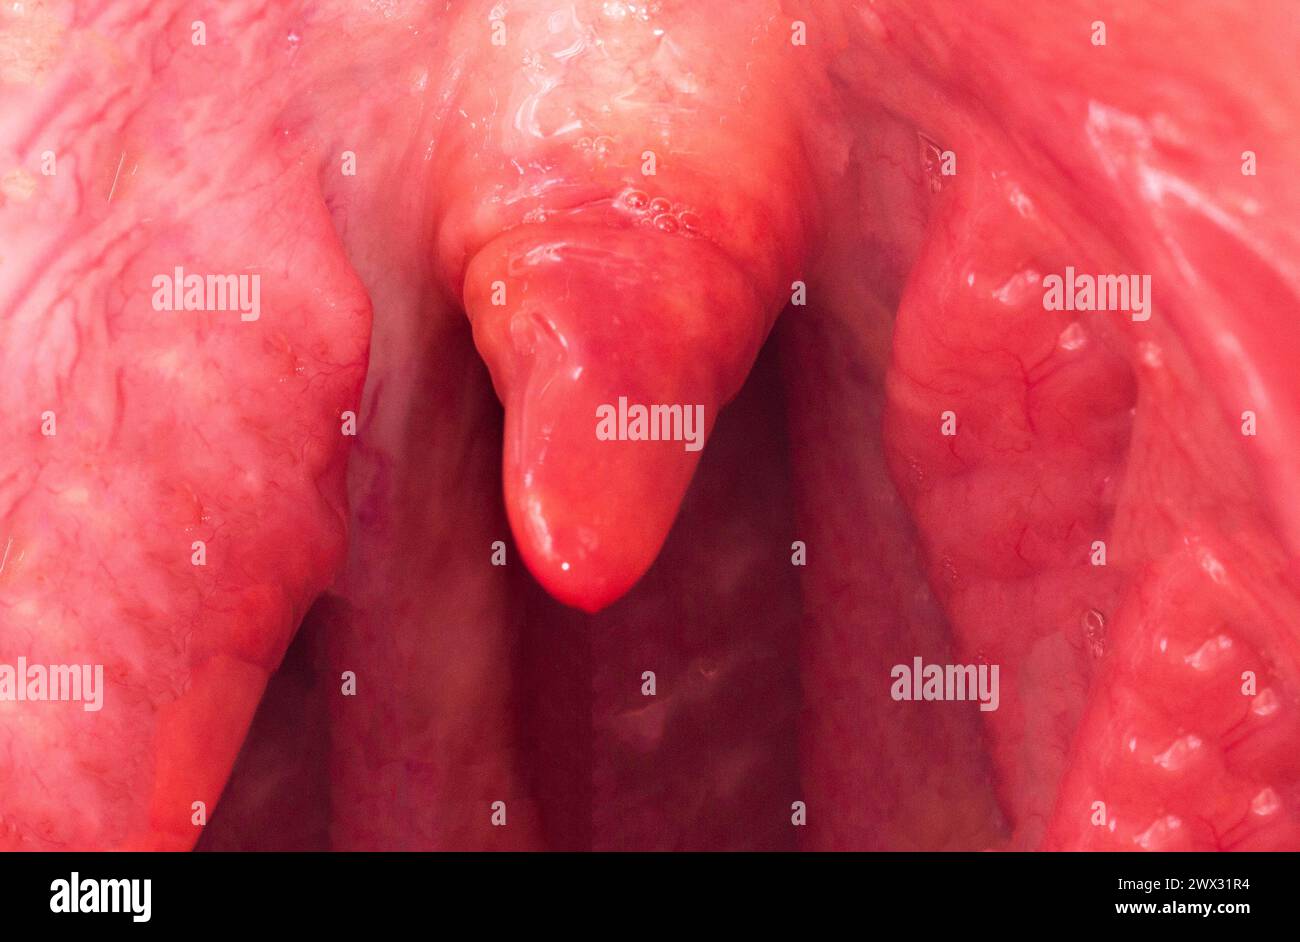 Uvulite e mal di gola nella cavità orale a causa di malattia. Infiammazione dell'uvula e tonsille a causa di infezioni durante la malattia, primo piano Foto Stock